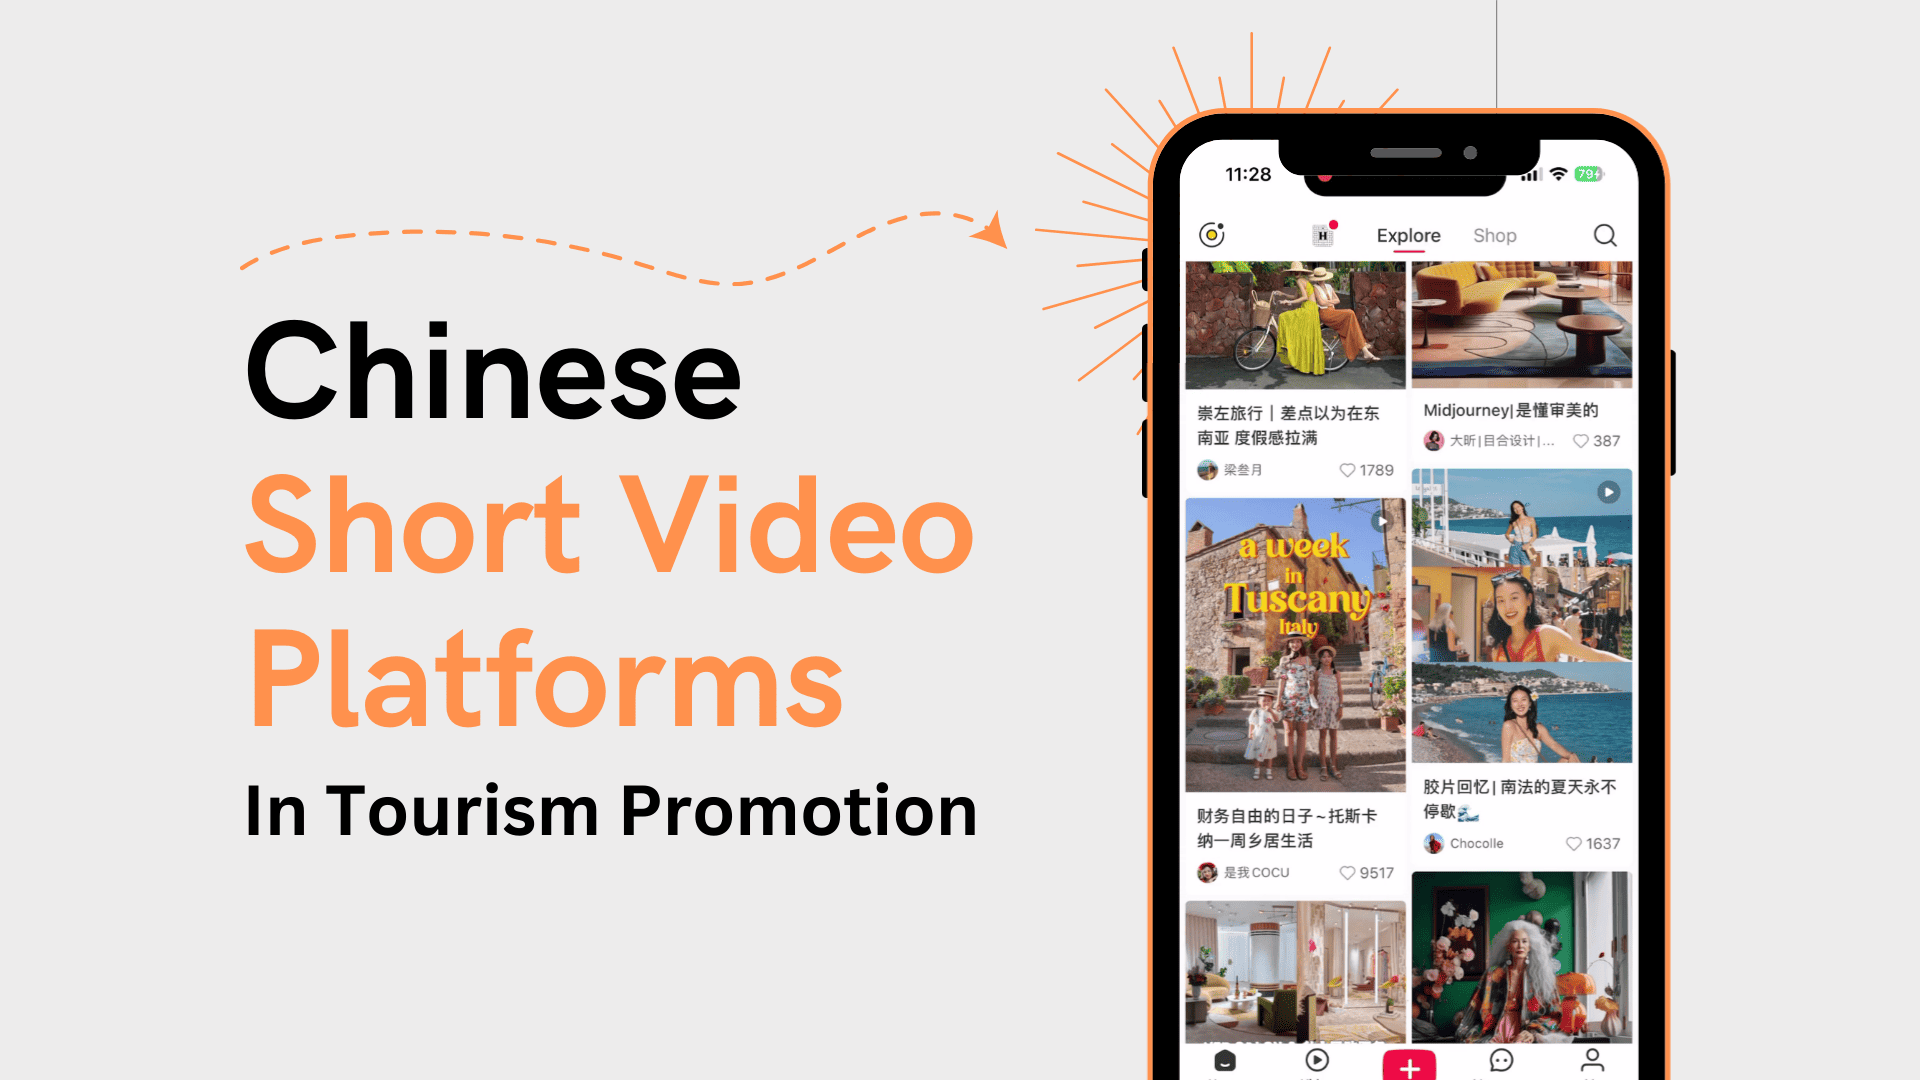 Chinese short video platforms